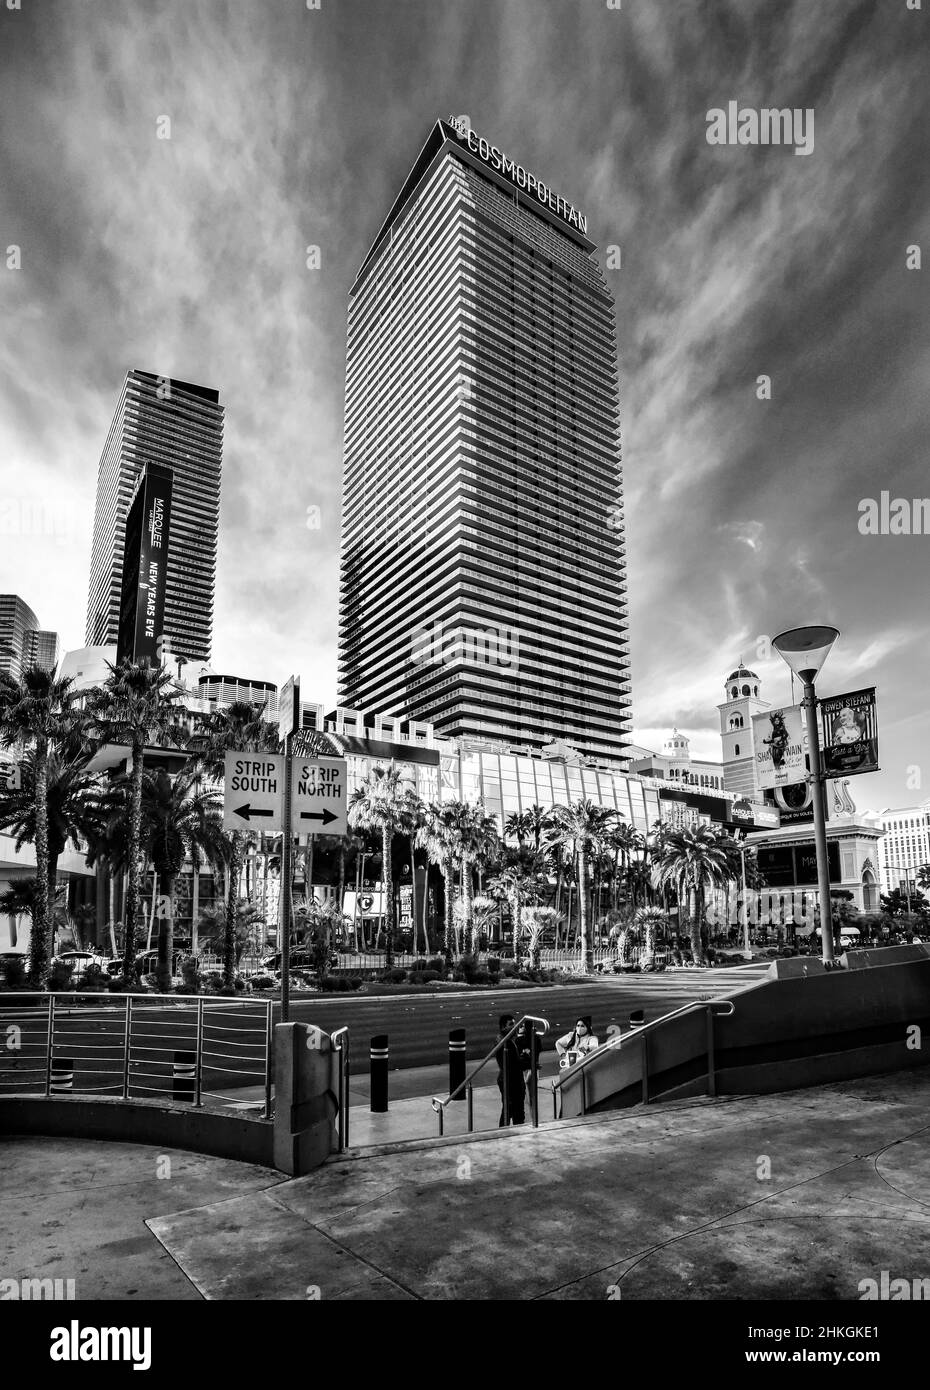 Un cliché artistique en noir et blanc du Cosmopolitan Resort and Casino sur le Strip de Las Vegas, Las Vegas, Nevada. Banque D'Images